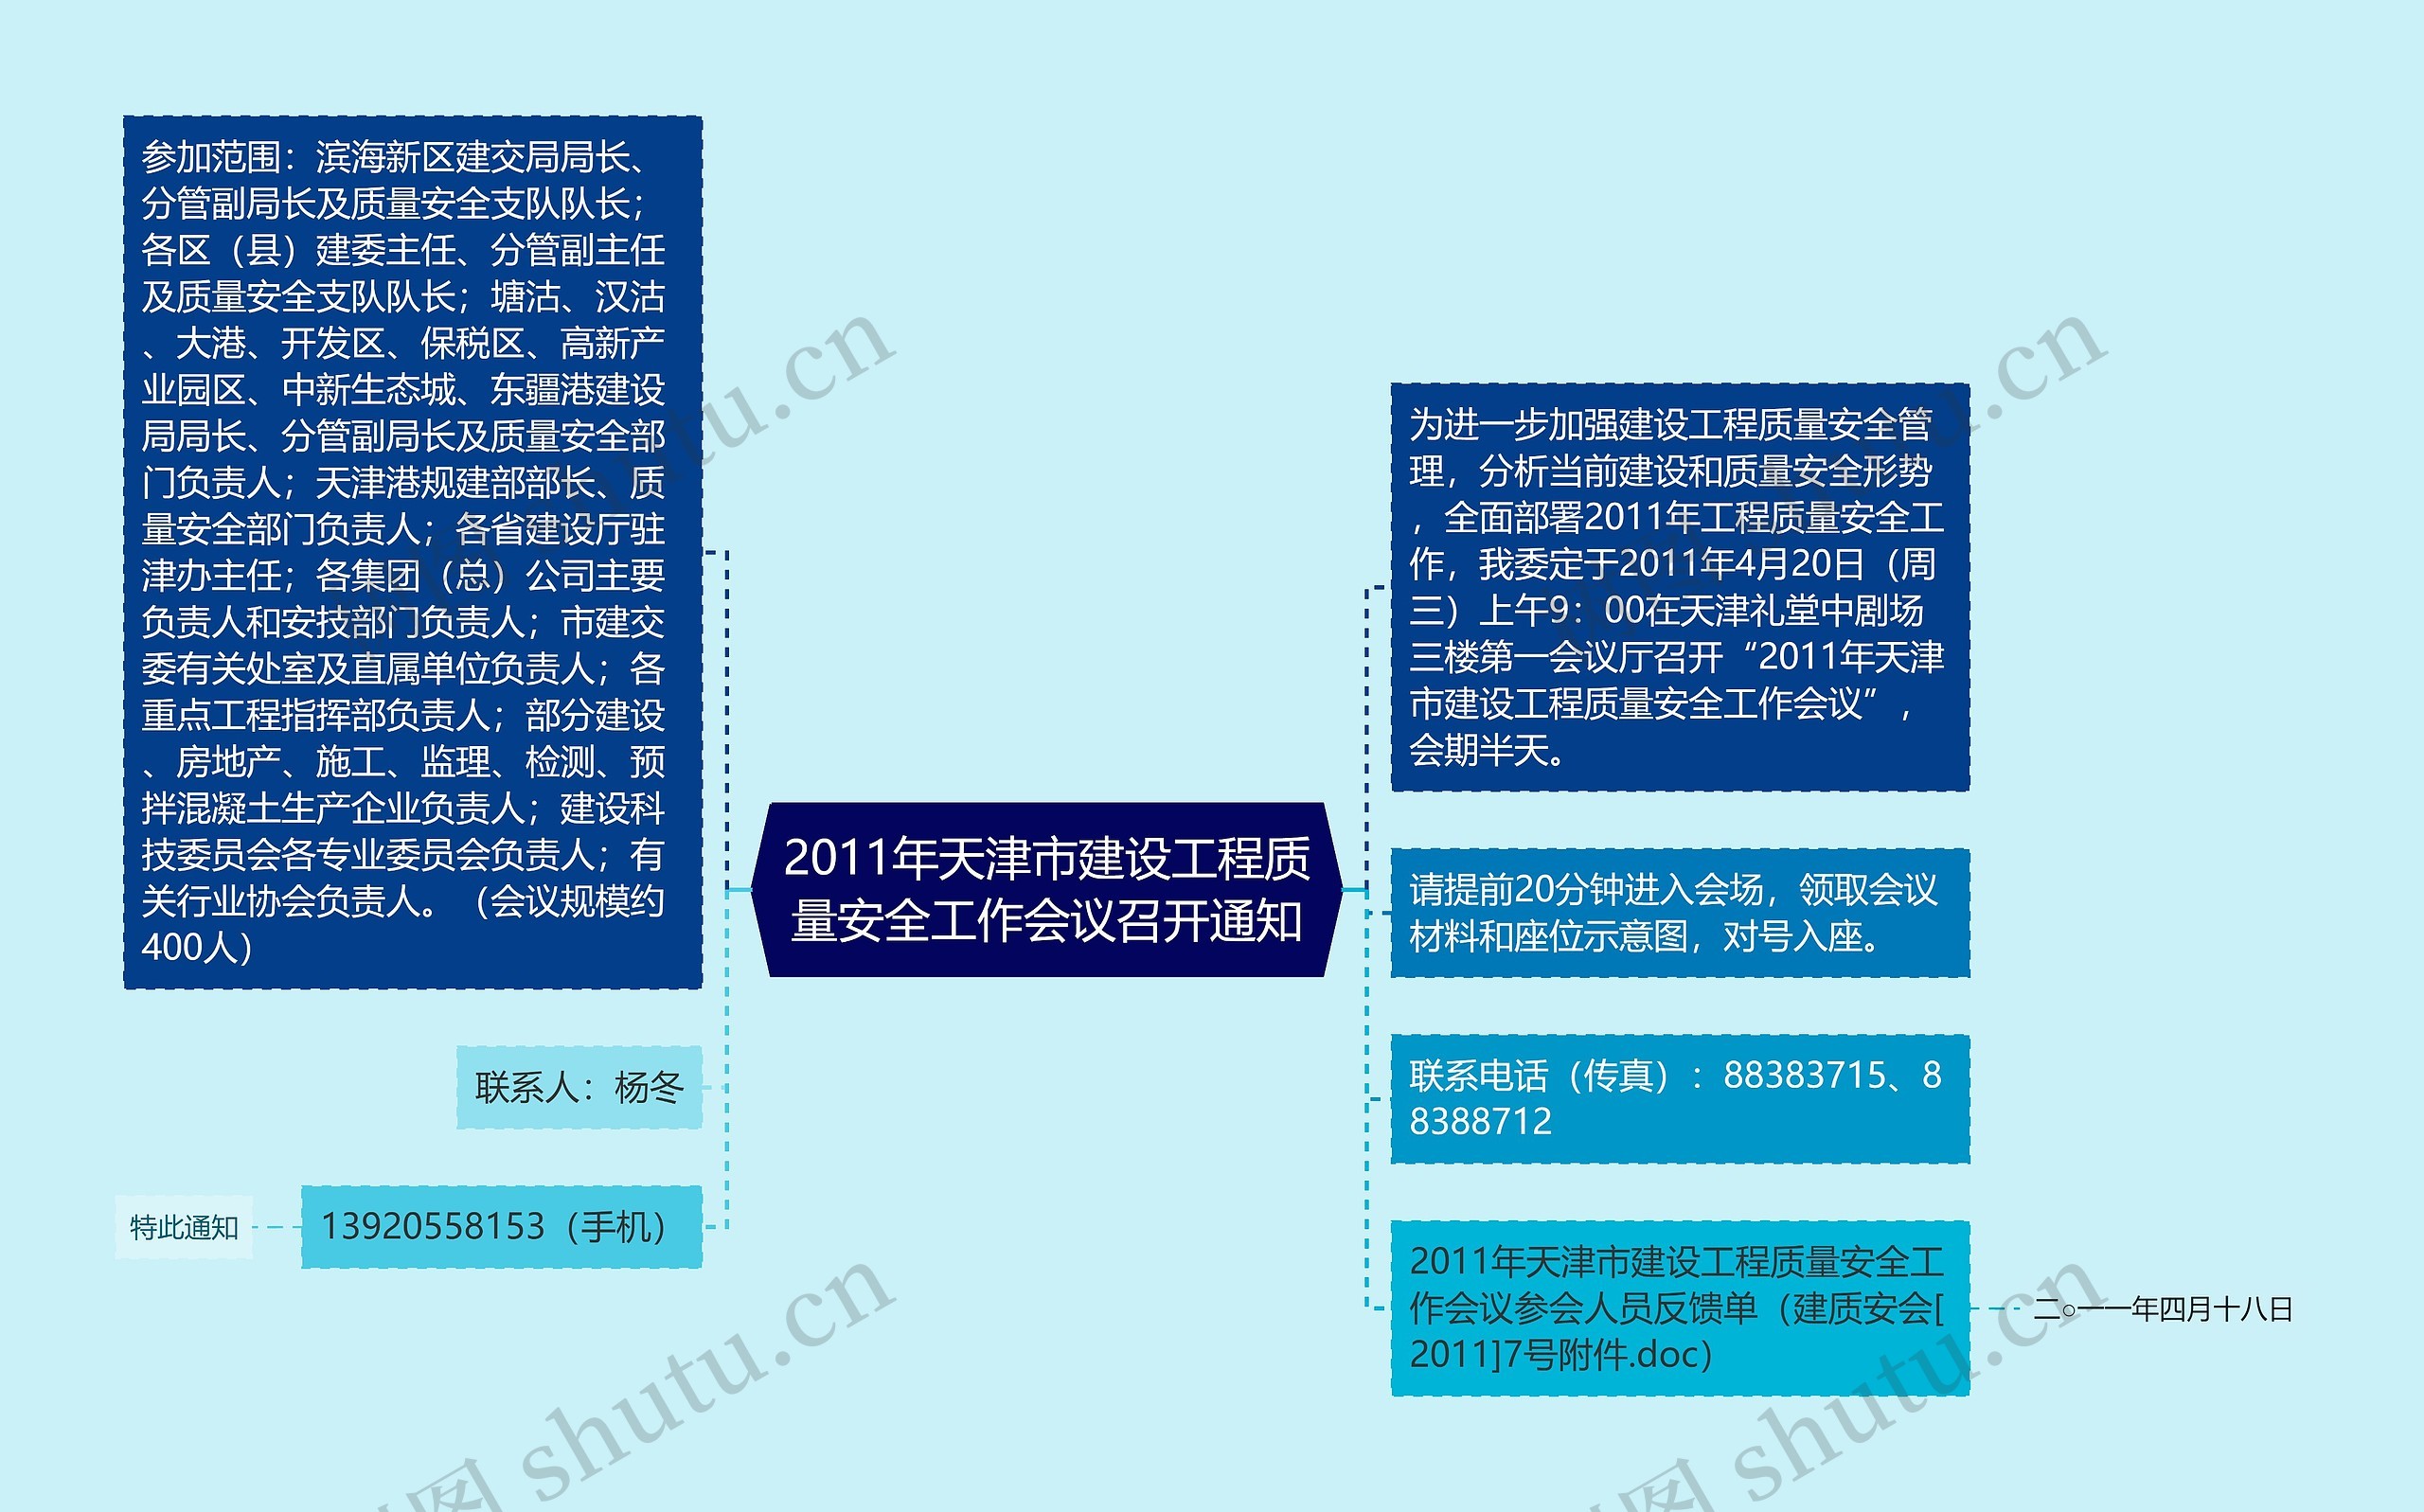 2011年天津市建设工程质量安全工作会议召开通知思维导图